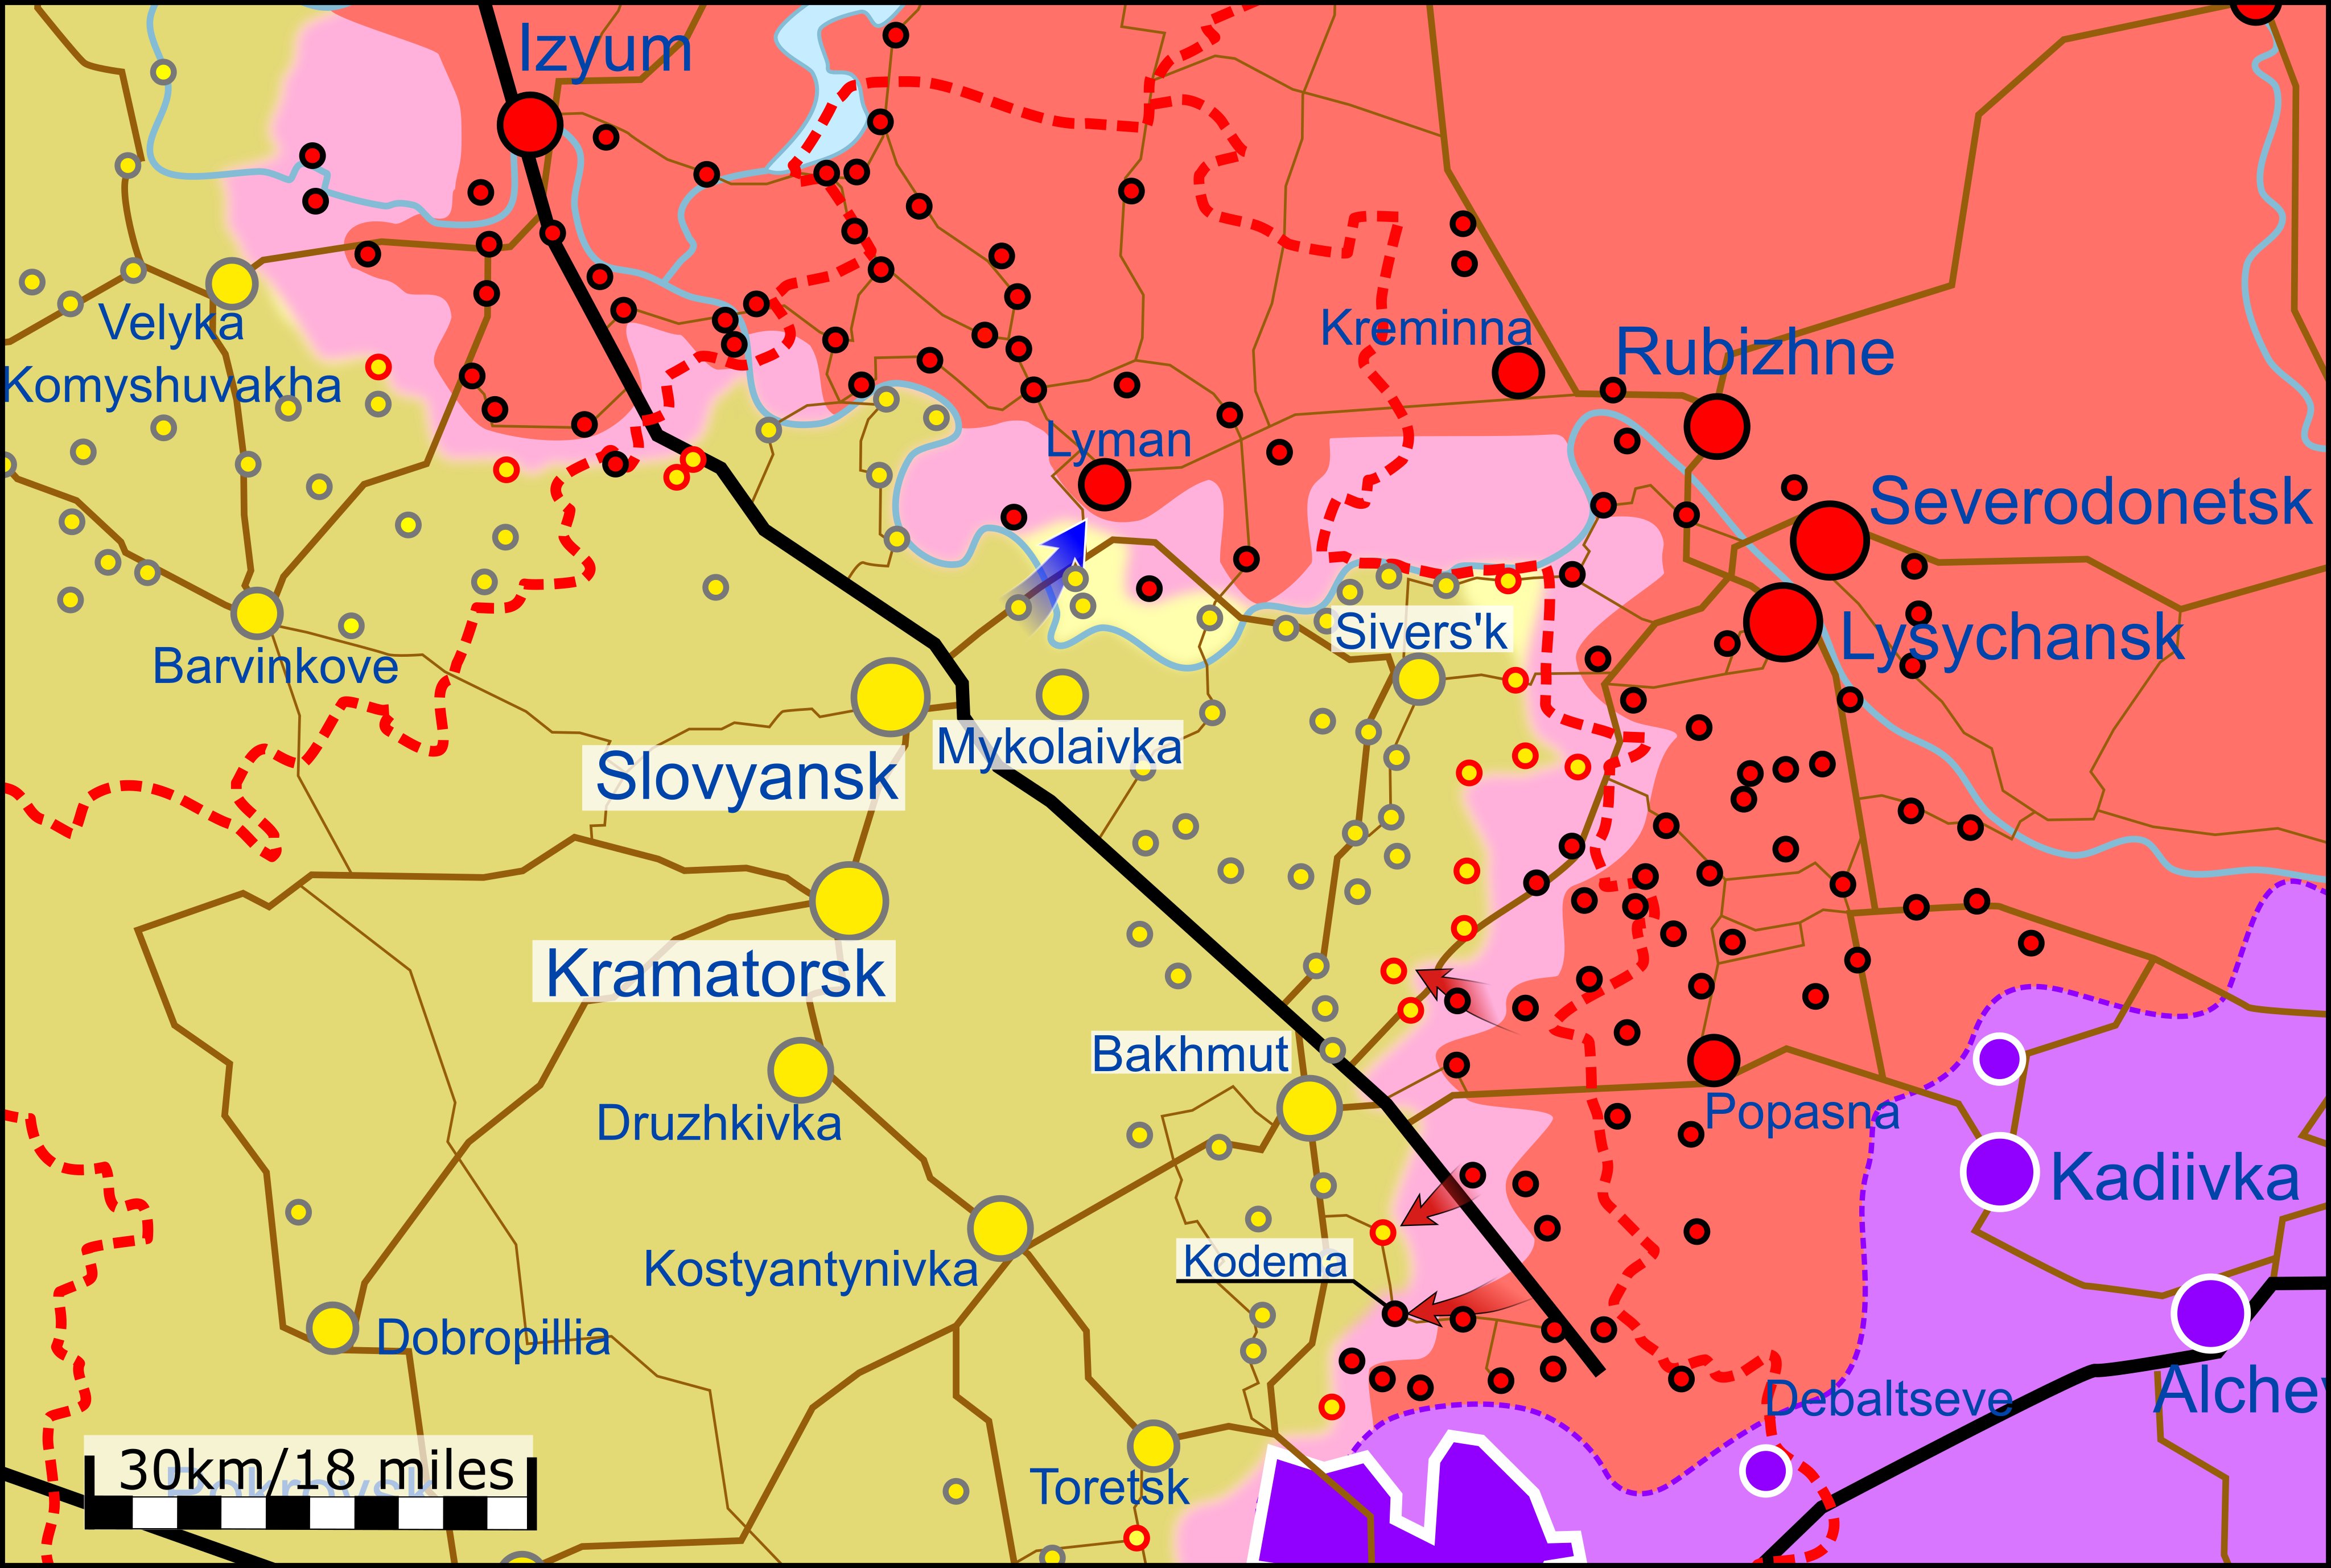 Карта боевых действий на украине на сегодня в реальном времени онлайн